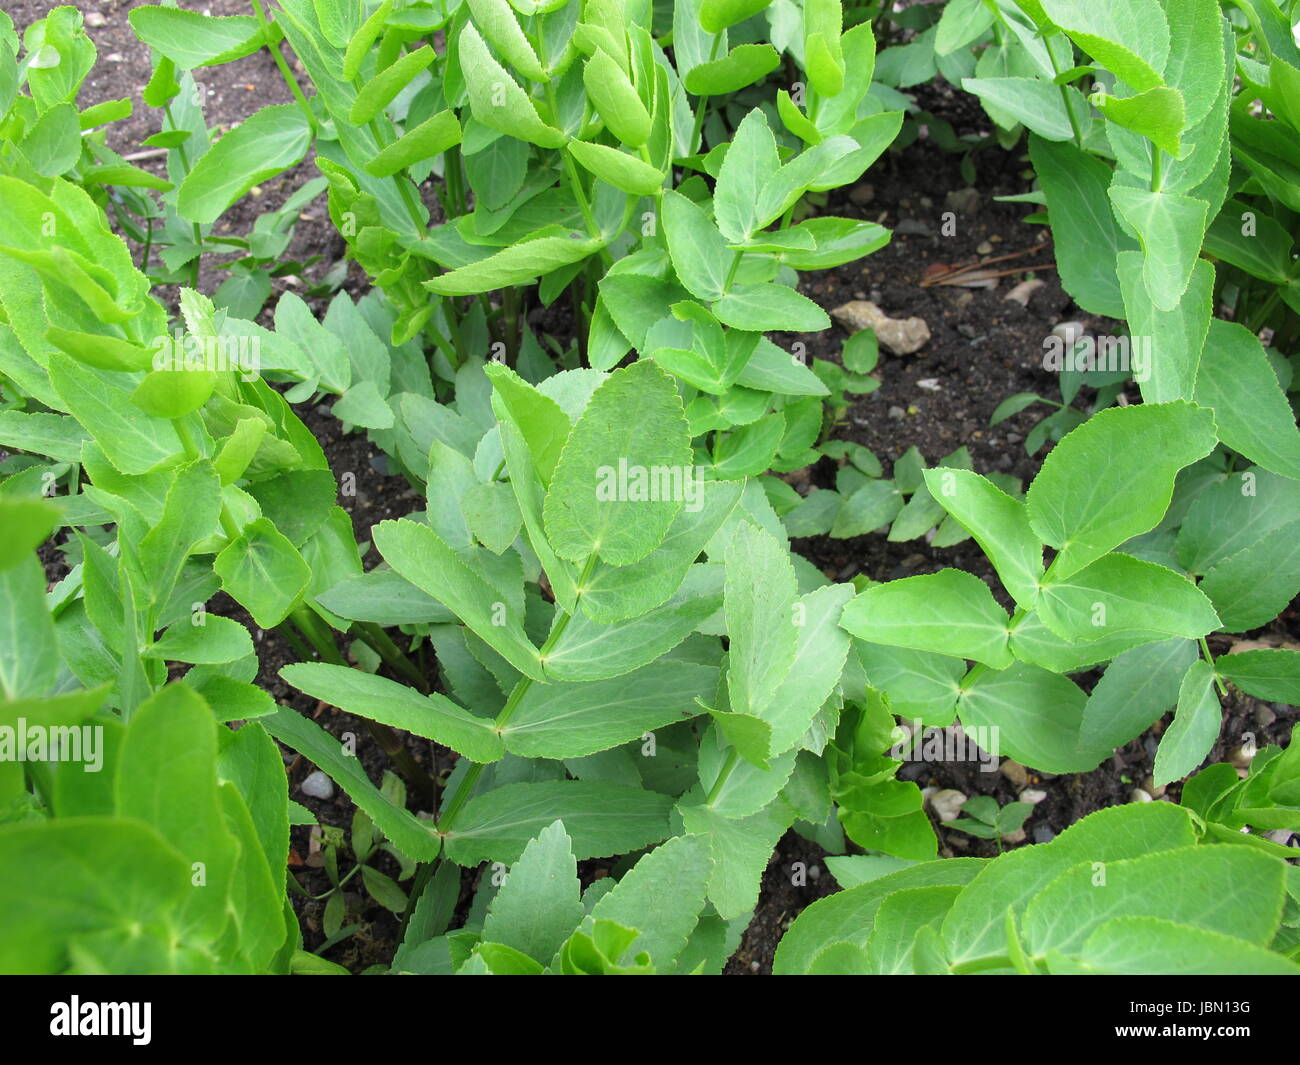 sugarroot in vegetable garden Stock Photo